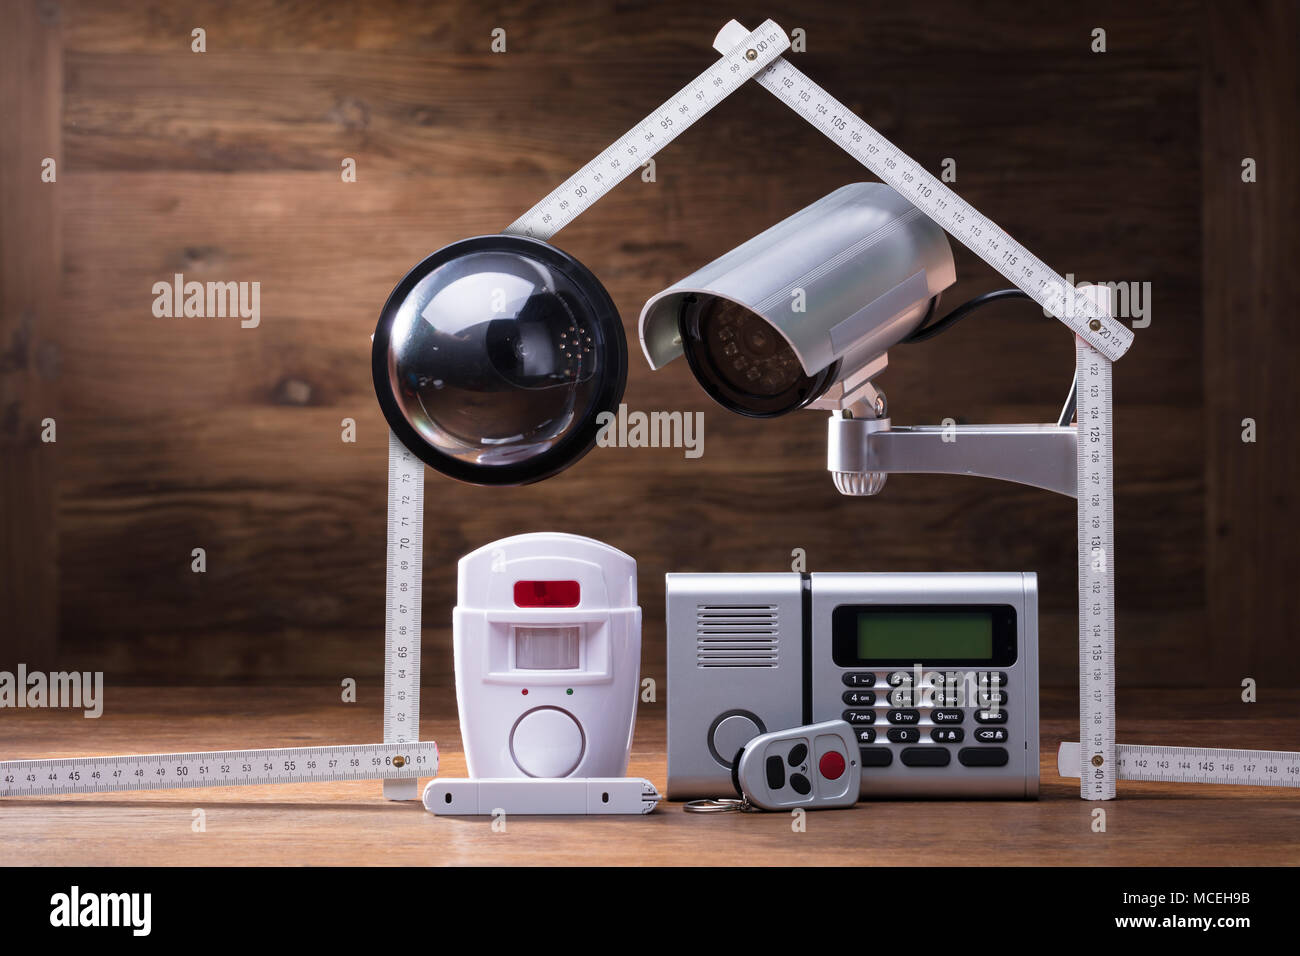 Caméra de surveillance et système d'alarme sous la maison faite avec un ruban à mesurer Banque D'Images